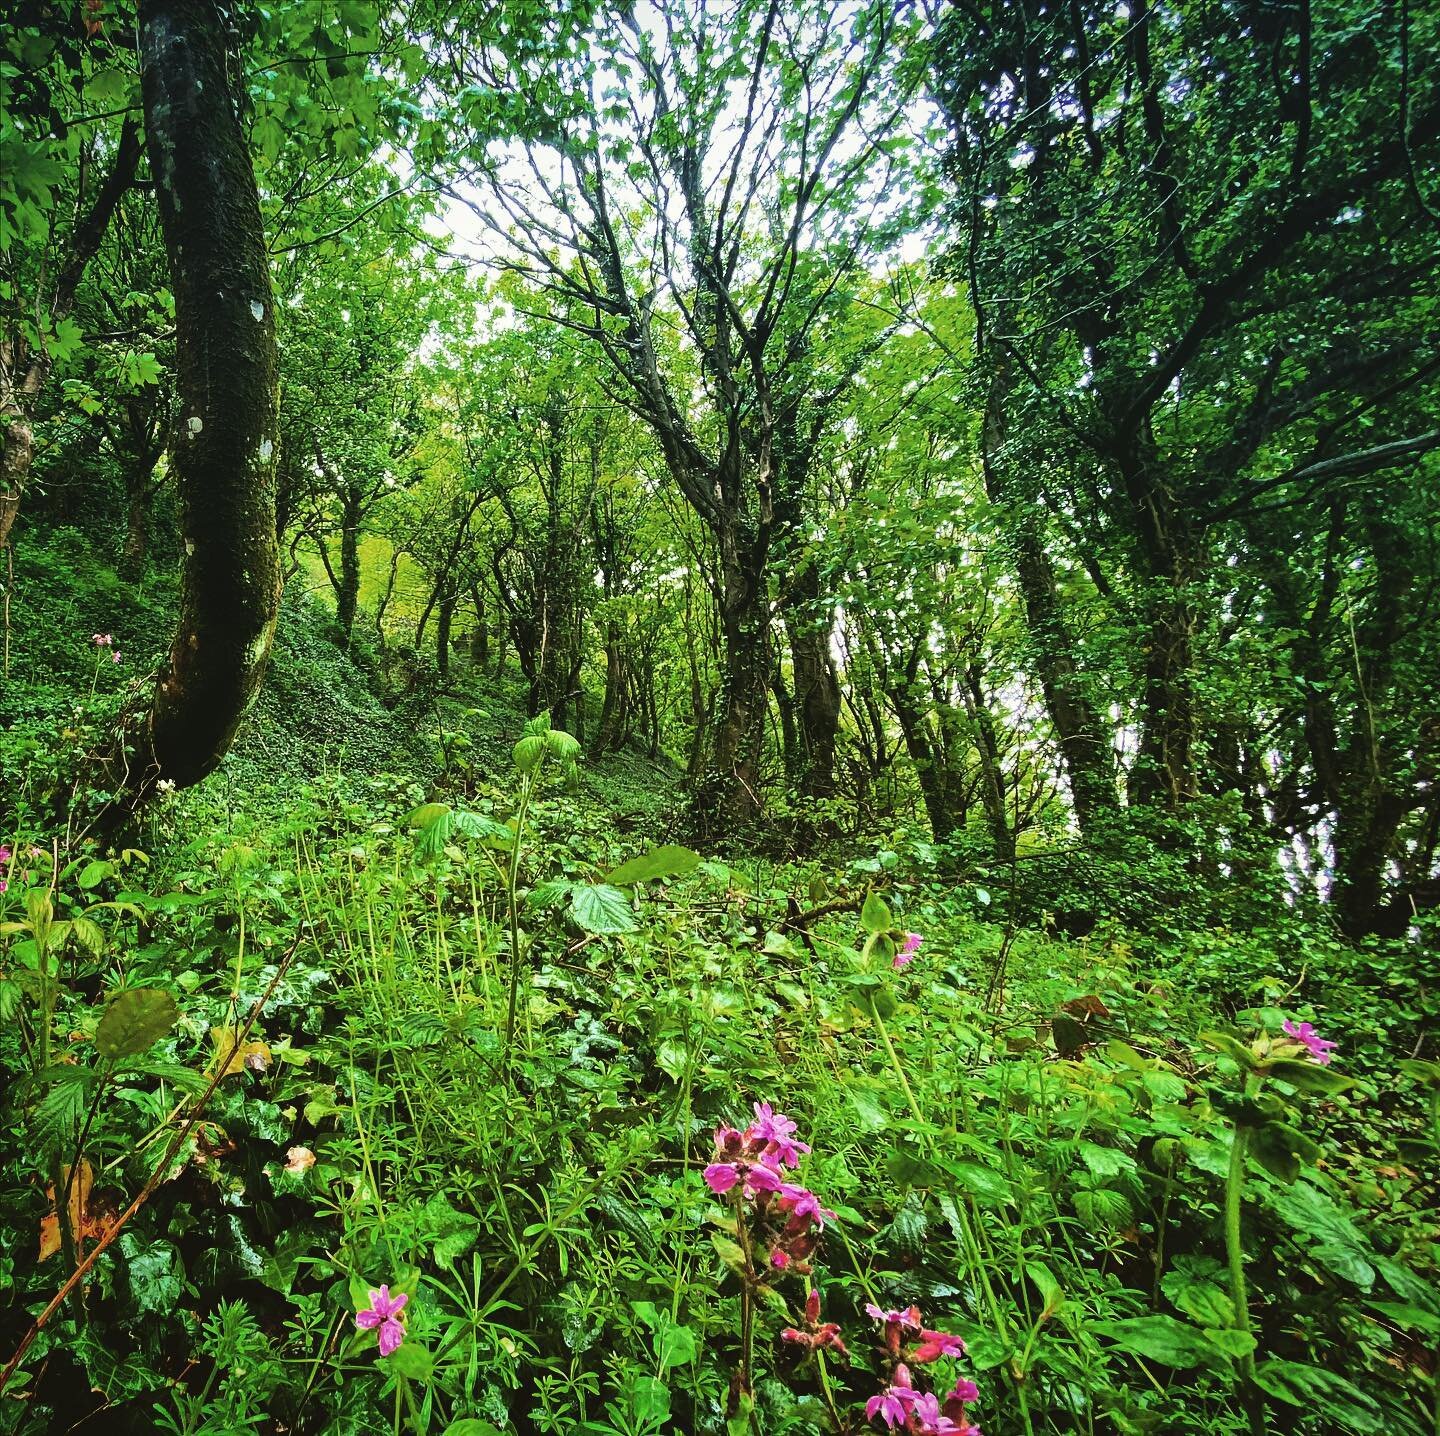 #lushgreen #wild #woodland #photographerofinstagram #photographer #trip #journey #outintheuk #ilfracombe #southwestcoast #GreatBritain #Europe